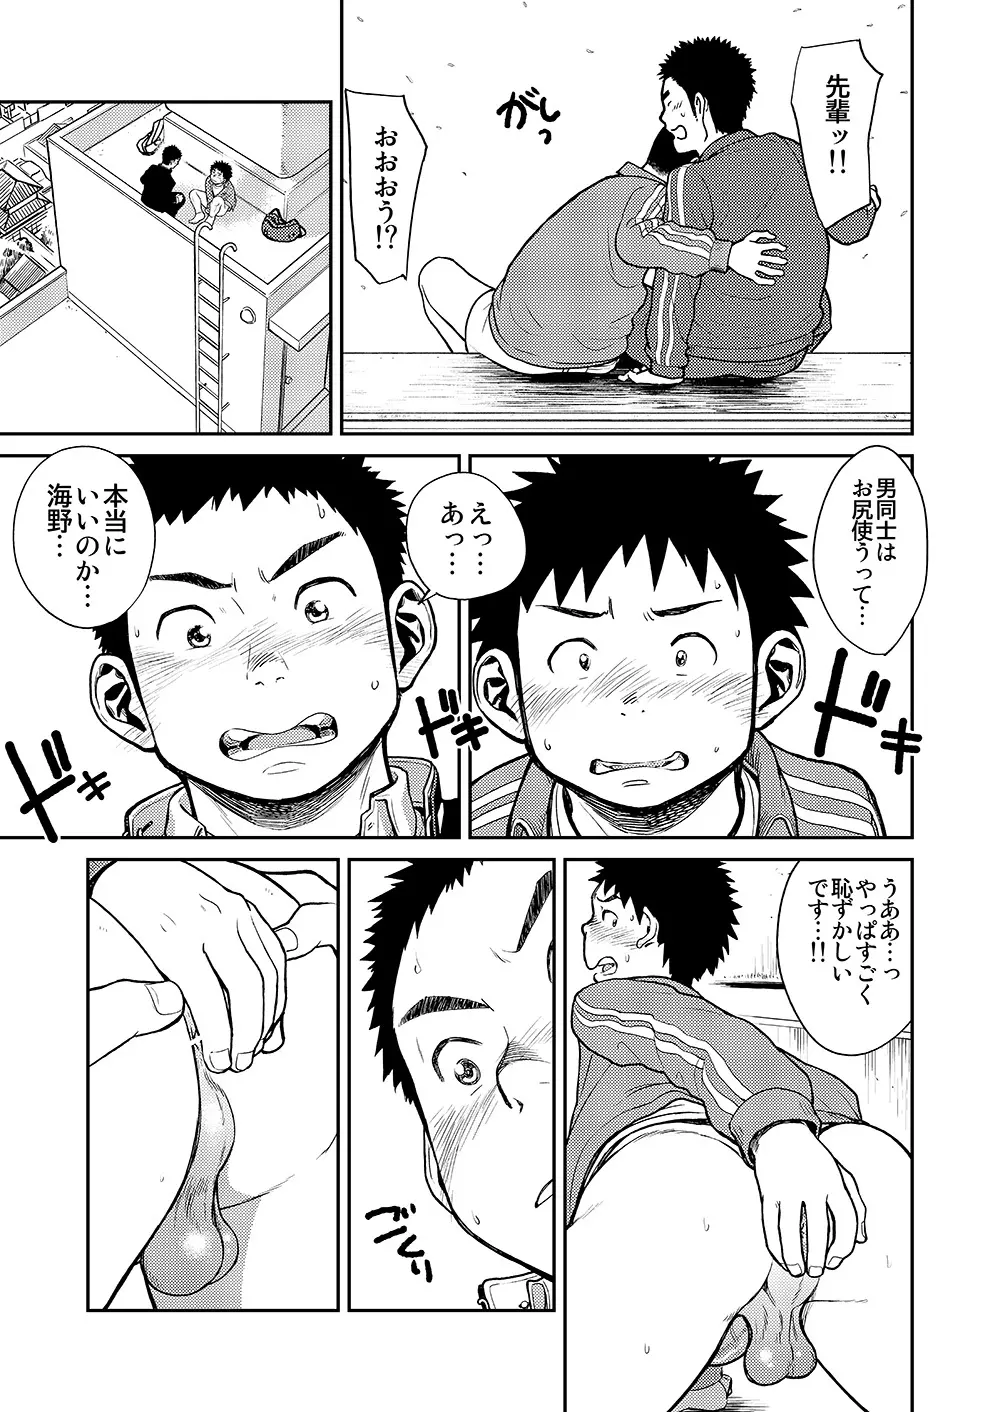 漫画少年ズーム VOL.11 & 12 9ページ